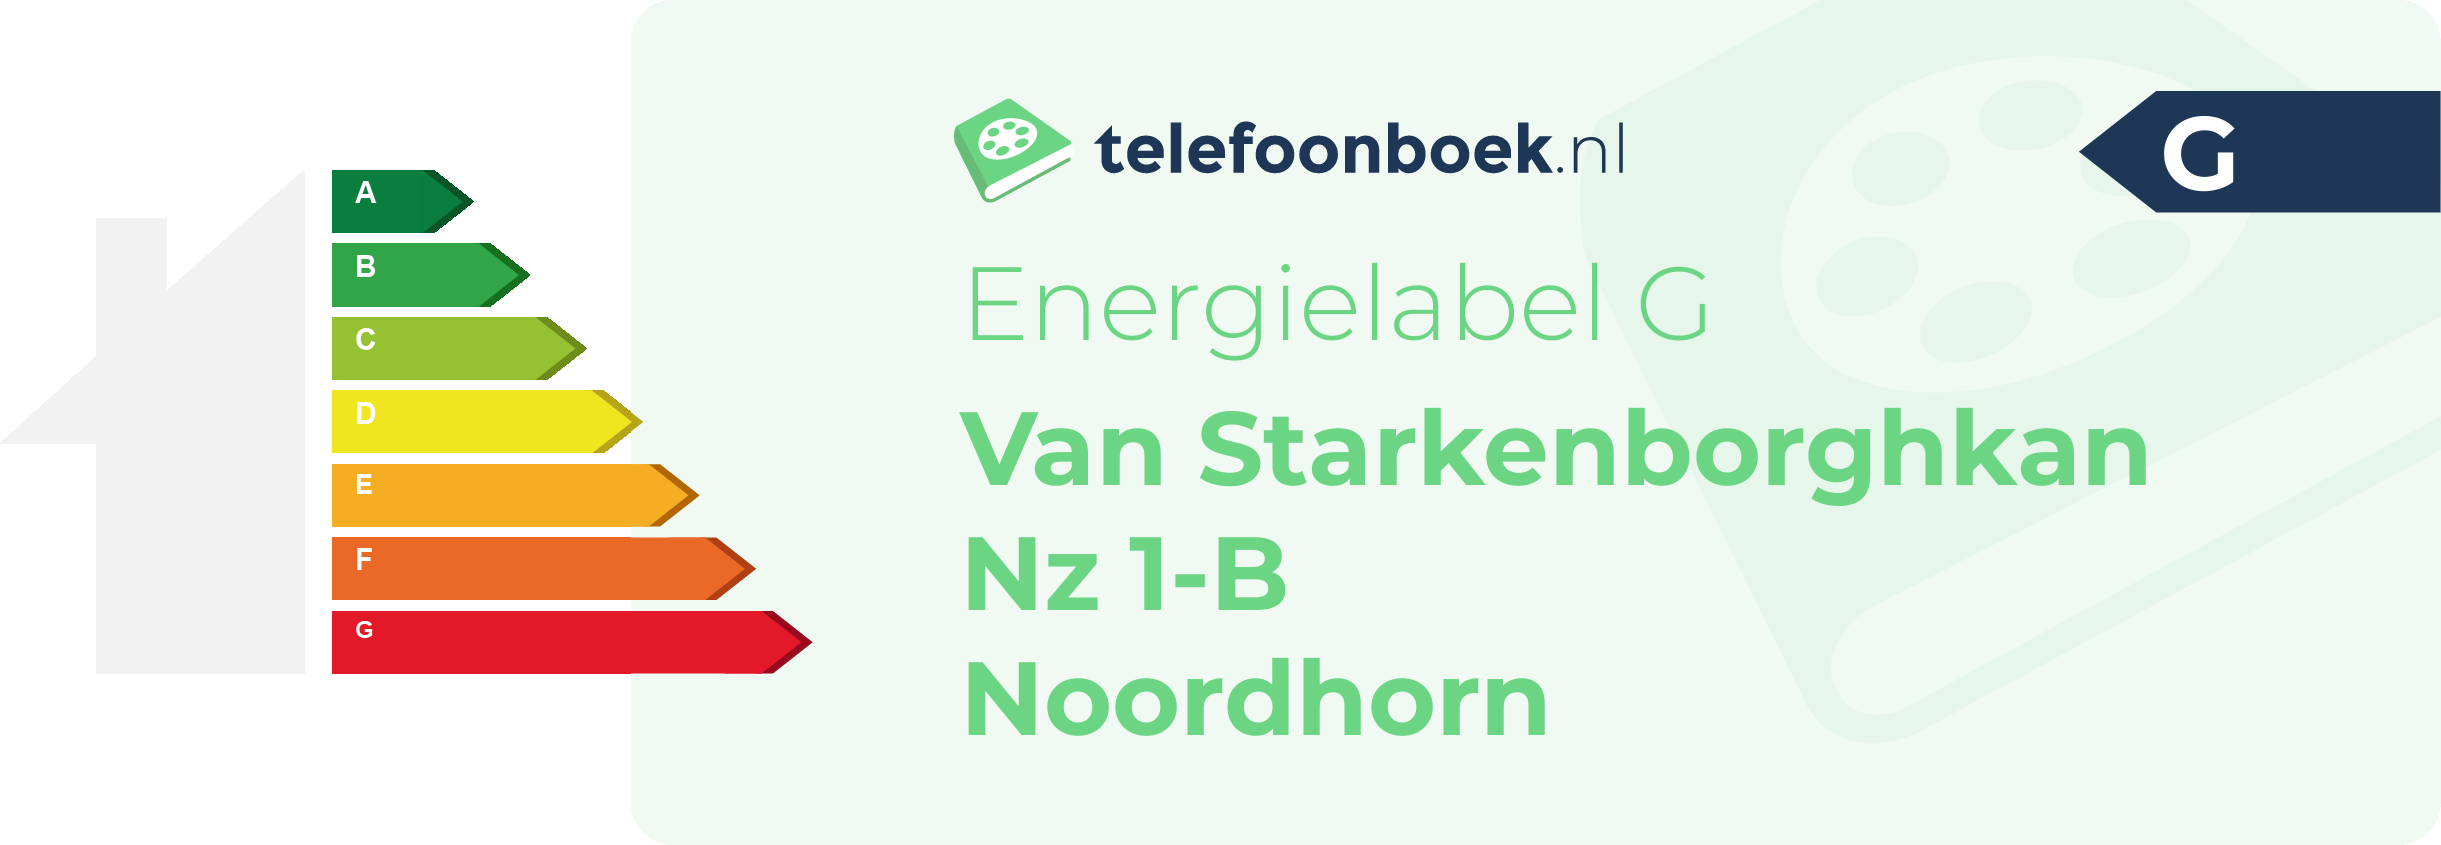 Energielabel Van Starkenborghkan Nz 1-B Noordhorn